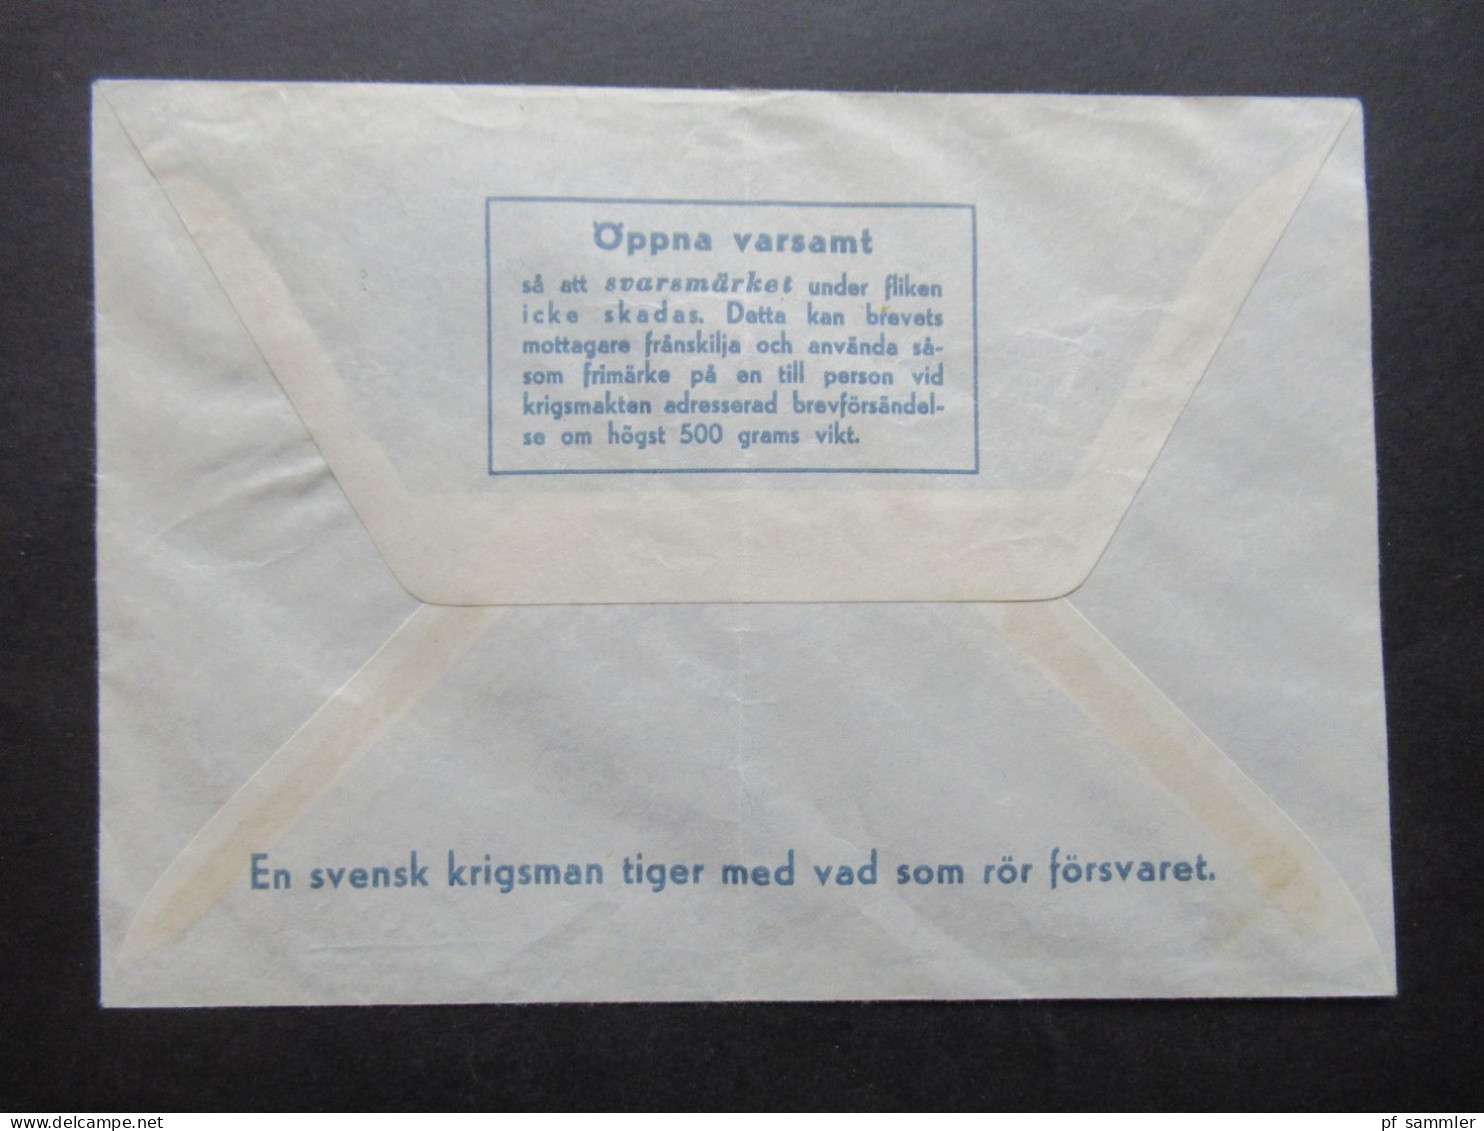 1968 Schweden Militärpost Militärbrev Stempel Svenska Bat Cypern / Schwedisches Militär Auf Zypern / FN Bat - Militaire Zegels